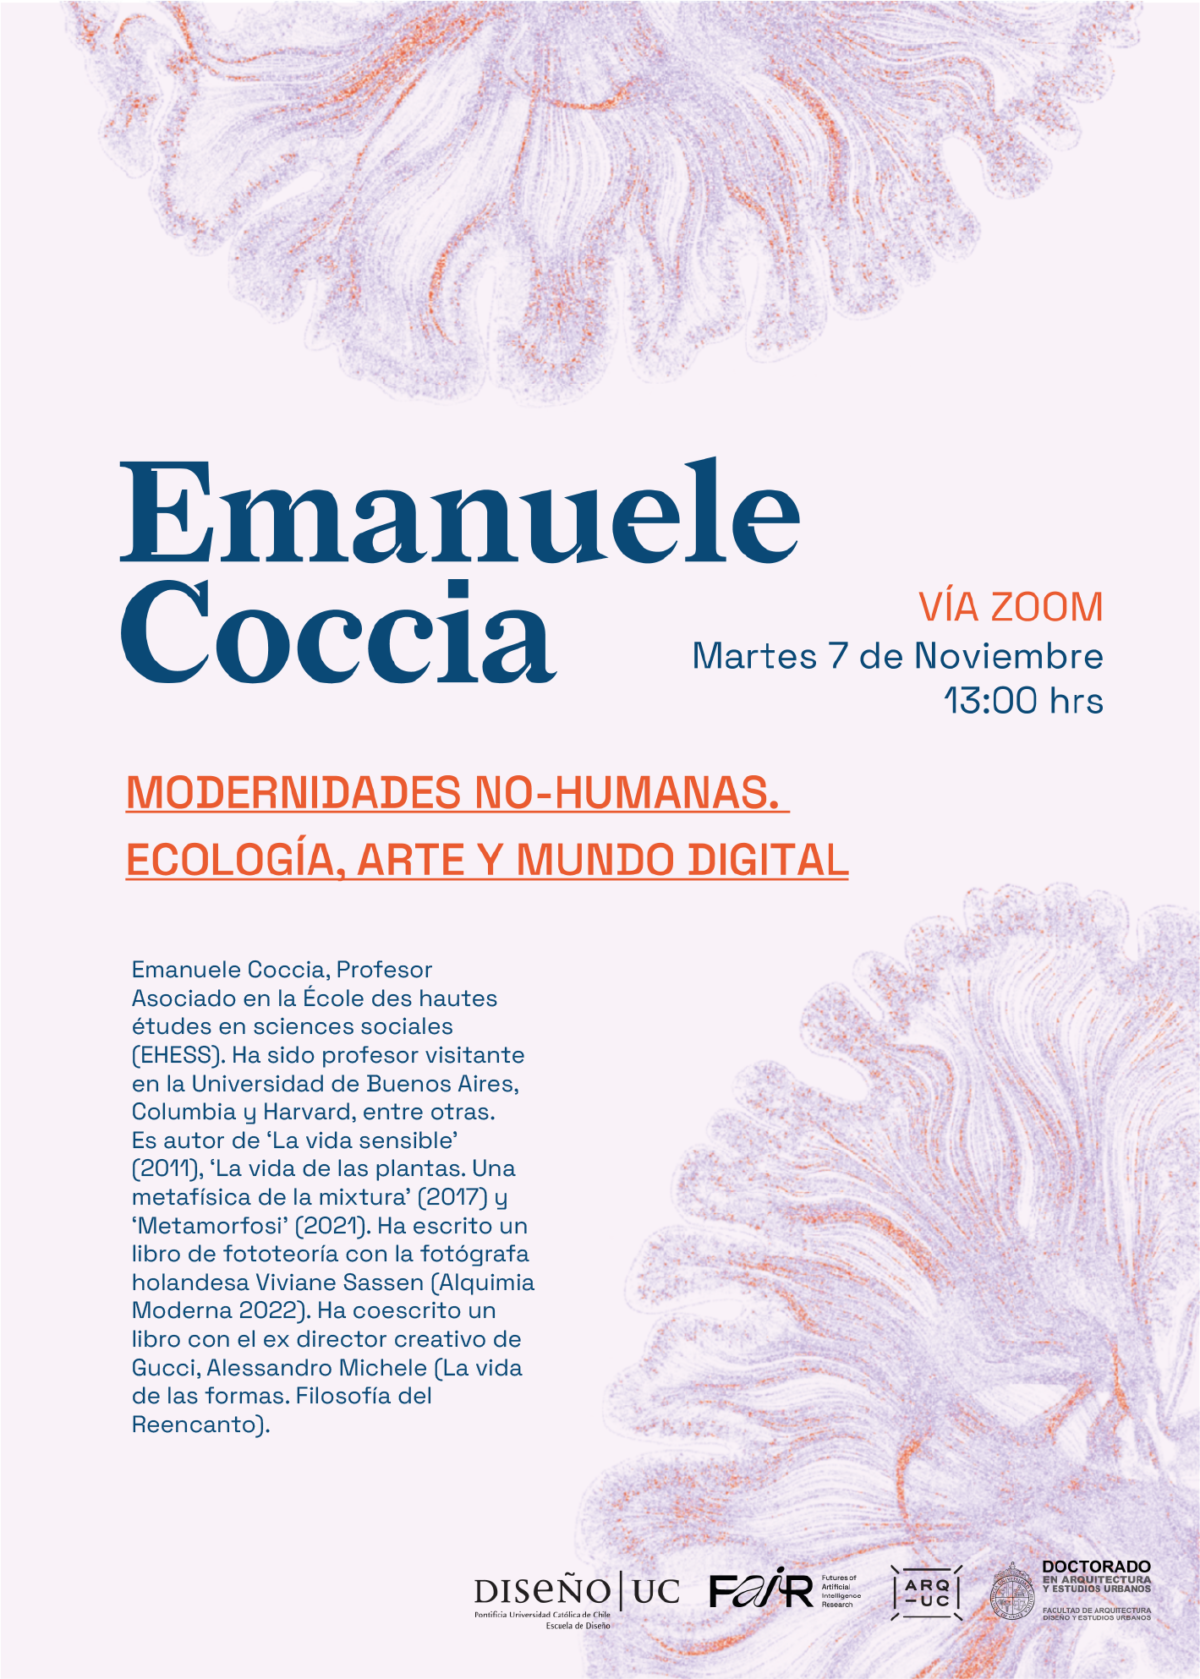 CHARLA MAGISTRAL | EMANUELE COCCIA: Modernidades no-humanas. Ecología, arte y mundo digital